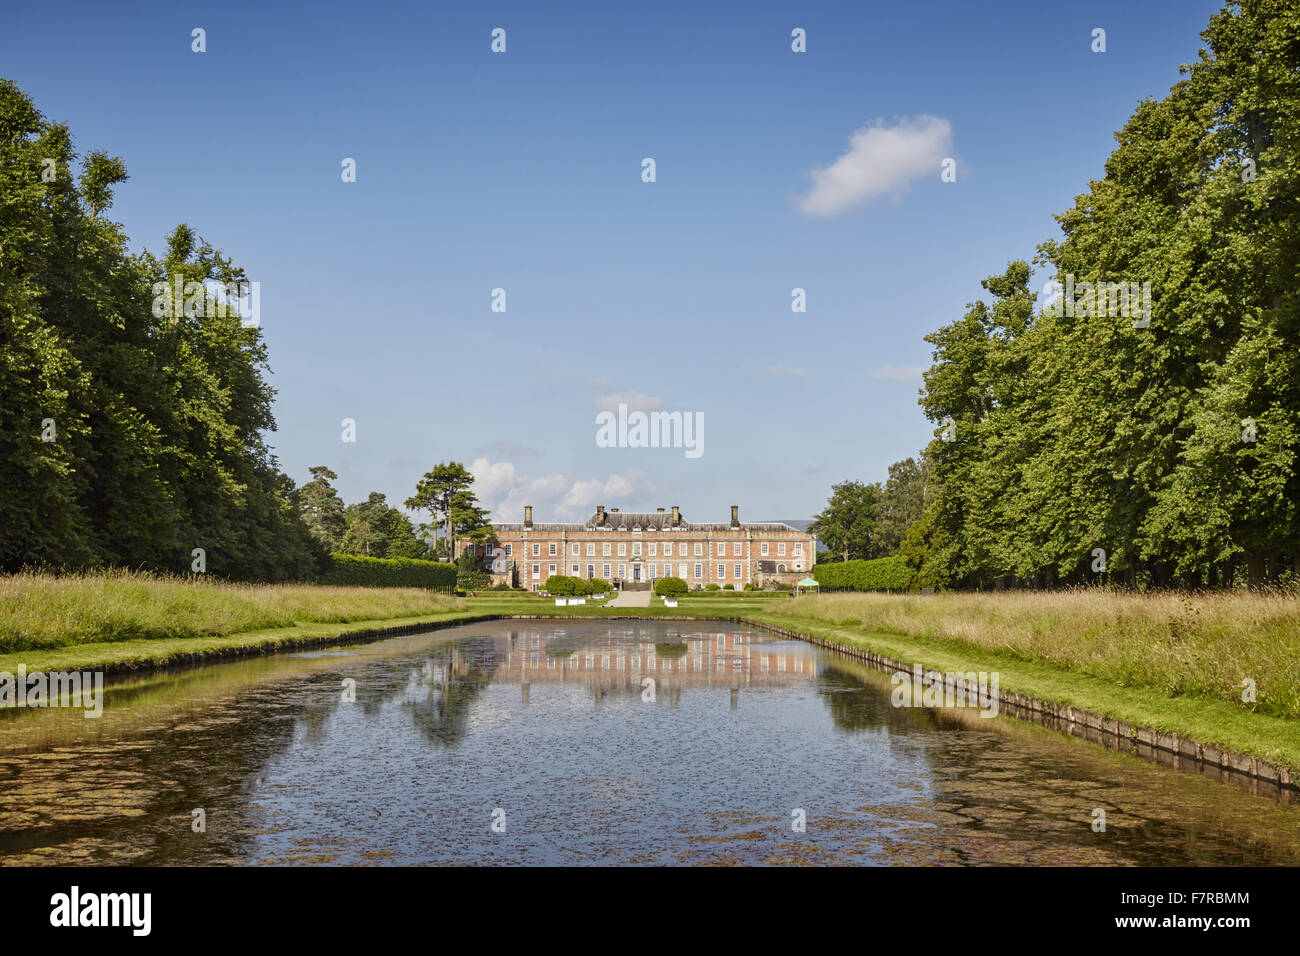 Die Gärten von Erdigg, Clwyd. Erdigg in Wrexham erzählt die Geschichte der Beziehung zwischen dem Adel und dem Diener, die in diesem Haus gelebt. Stockfoto